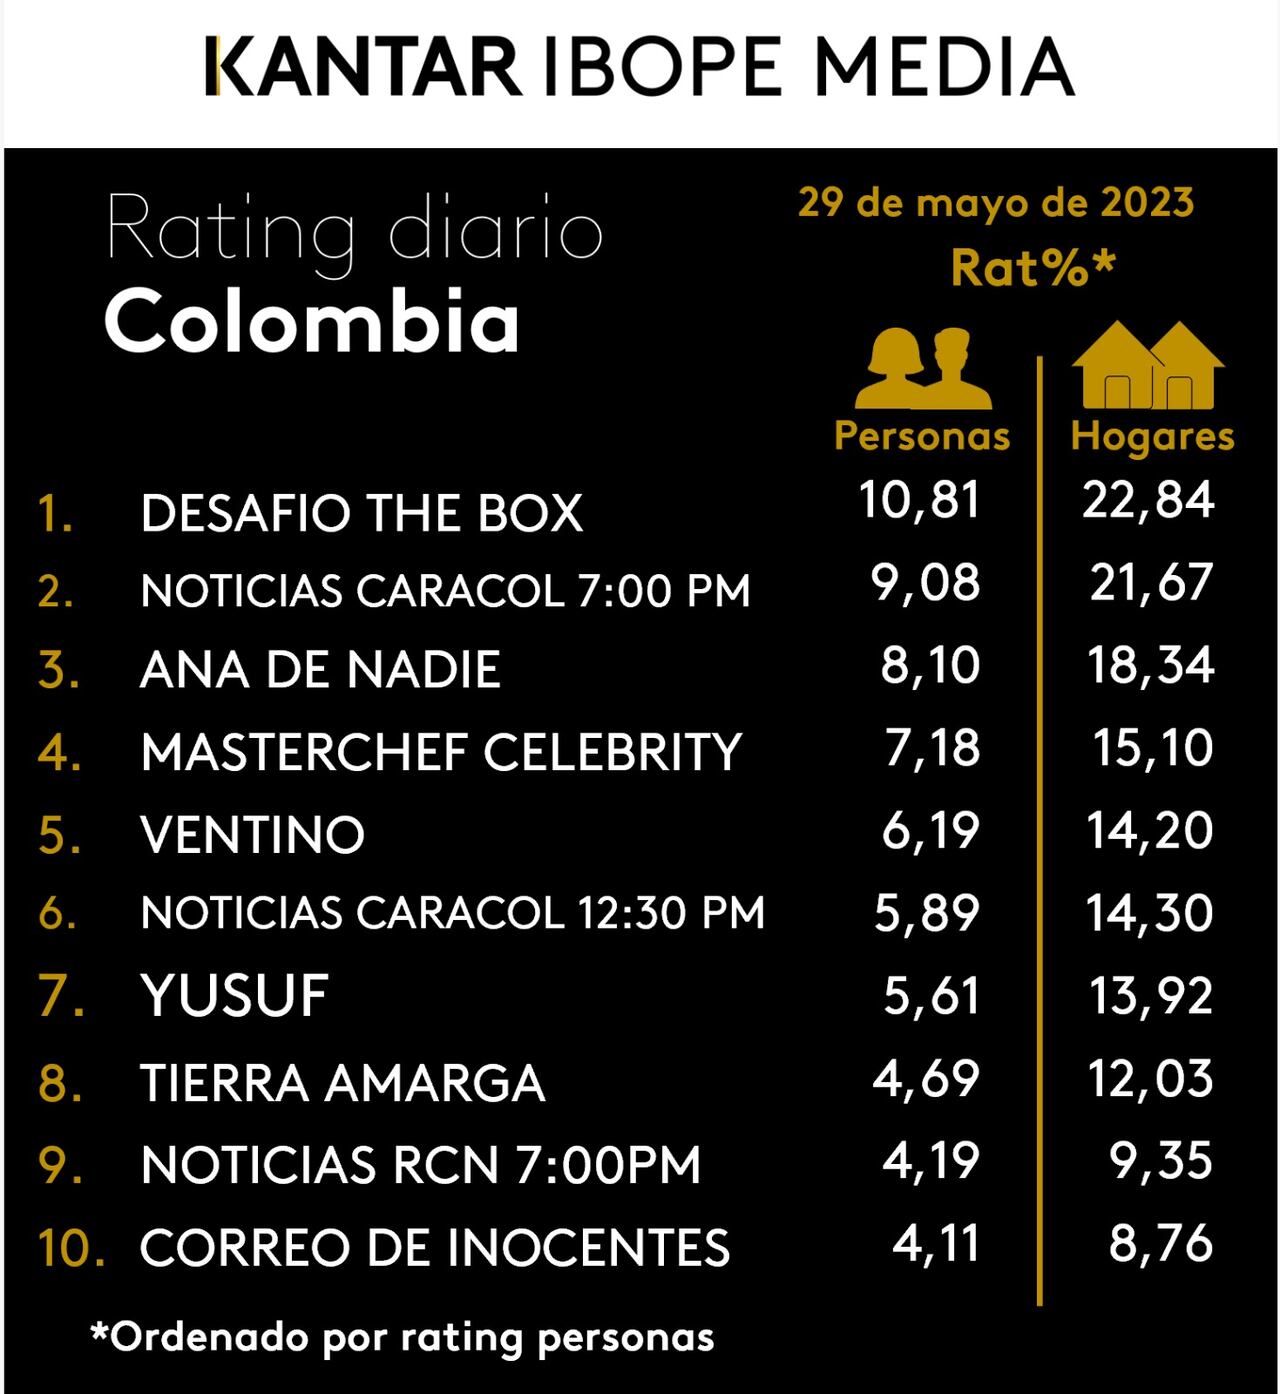 Así estuvo el rating en Colombia el 29 de mayo de 2023